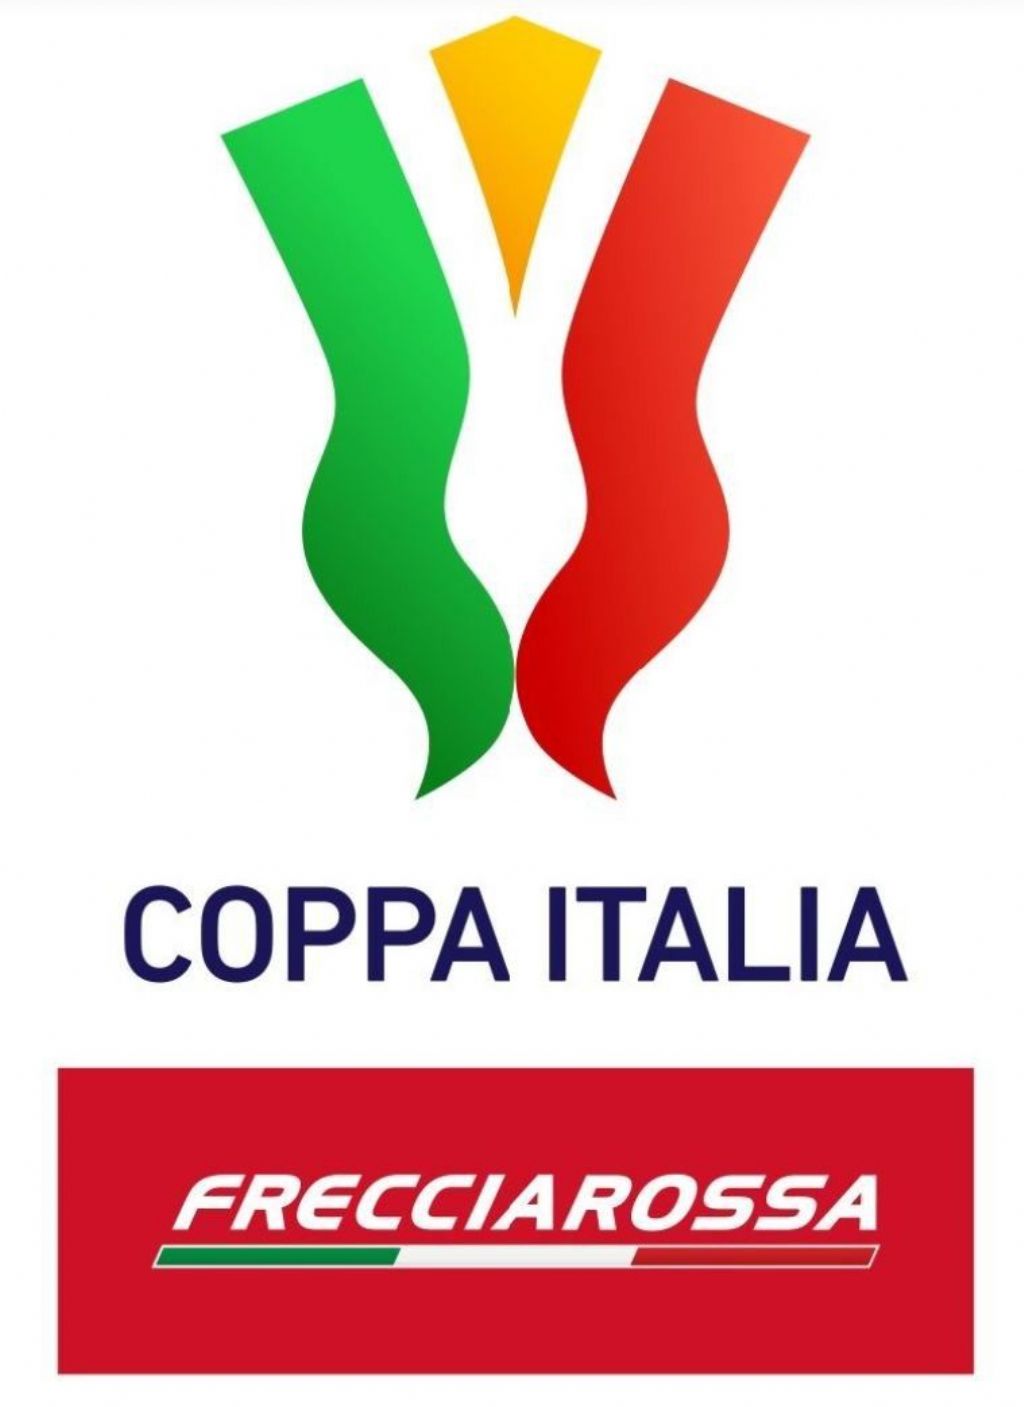 COPPA ITALIa freccia rossa